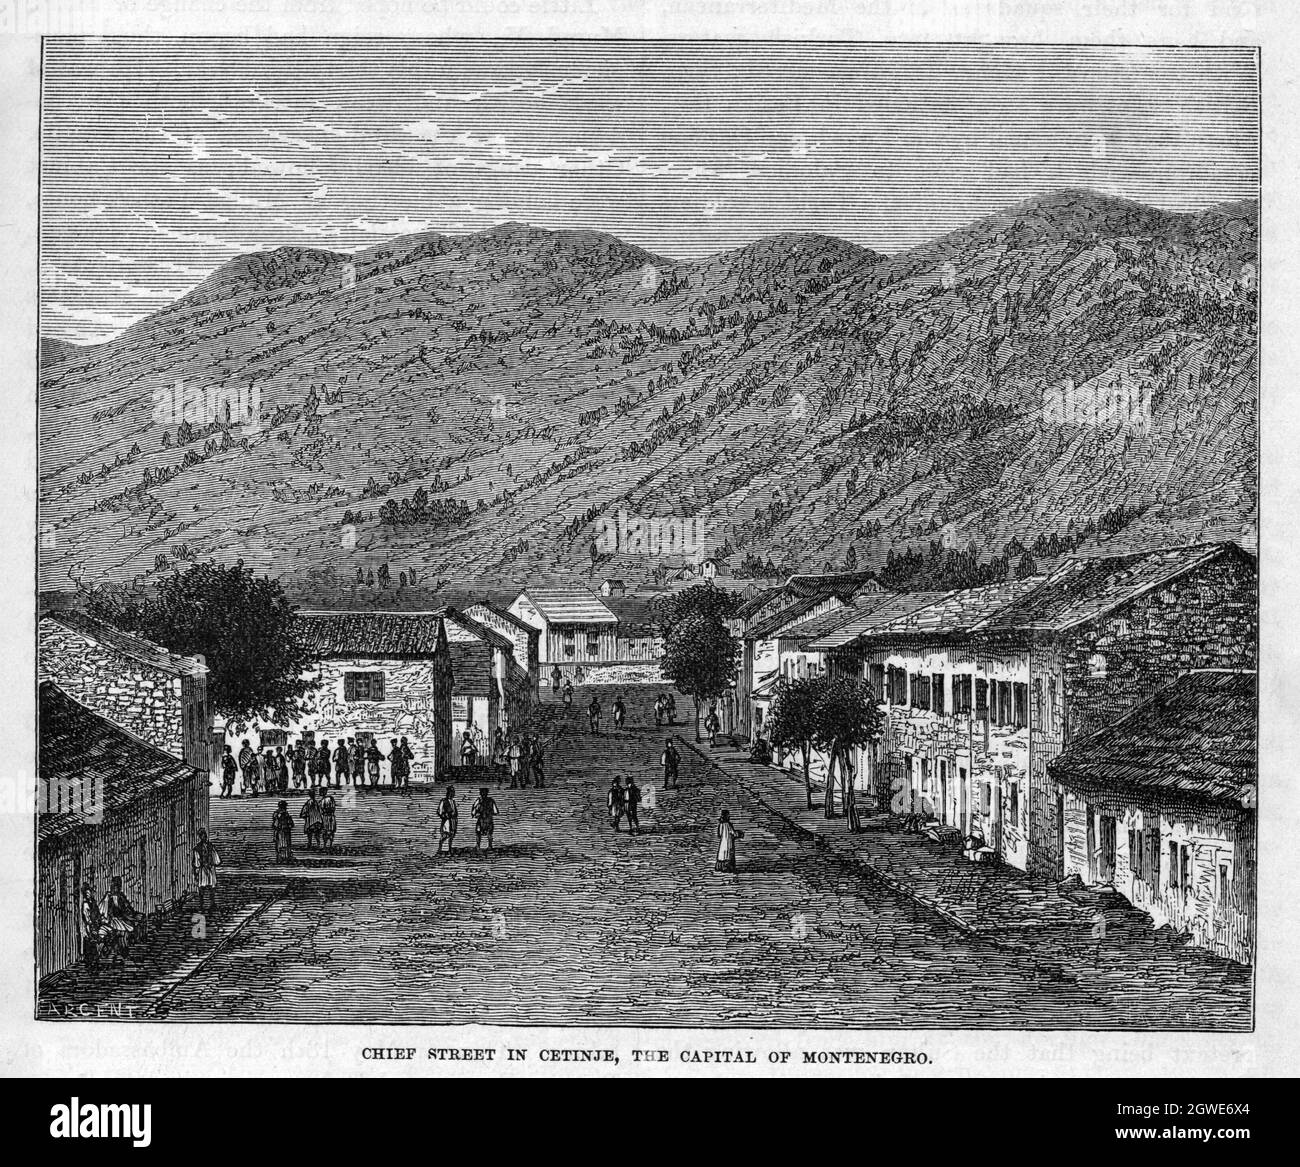 Die Hauptstraße in Cetinje, der Hauptstadt Montenegros, um 1876. Stockfoto